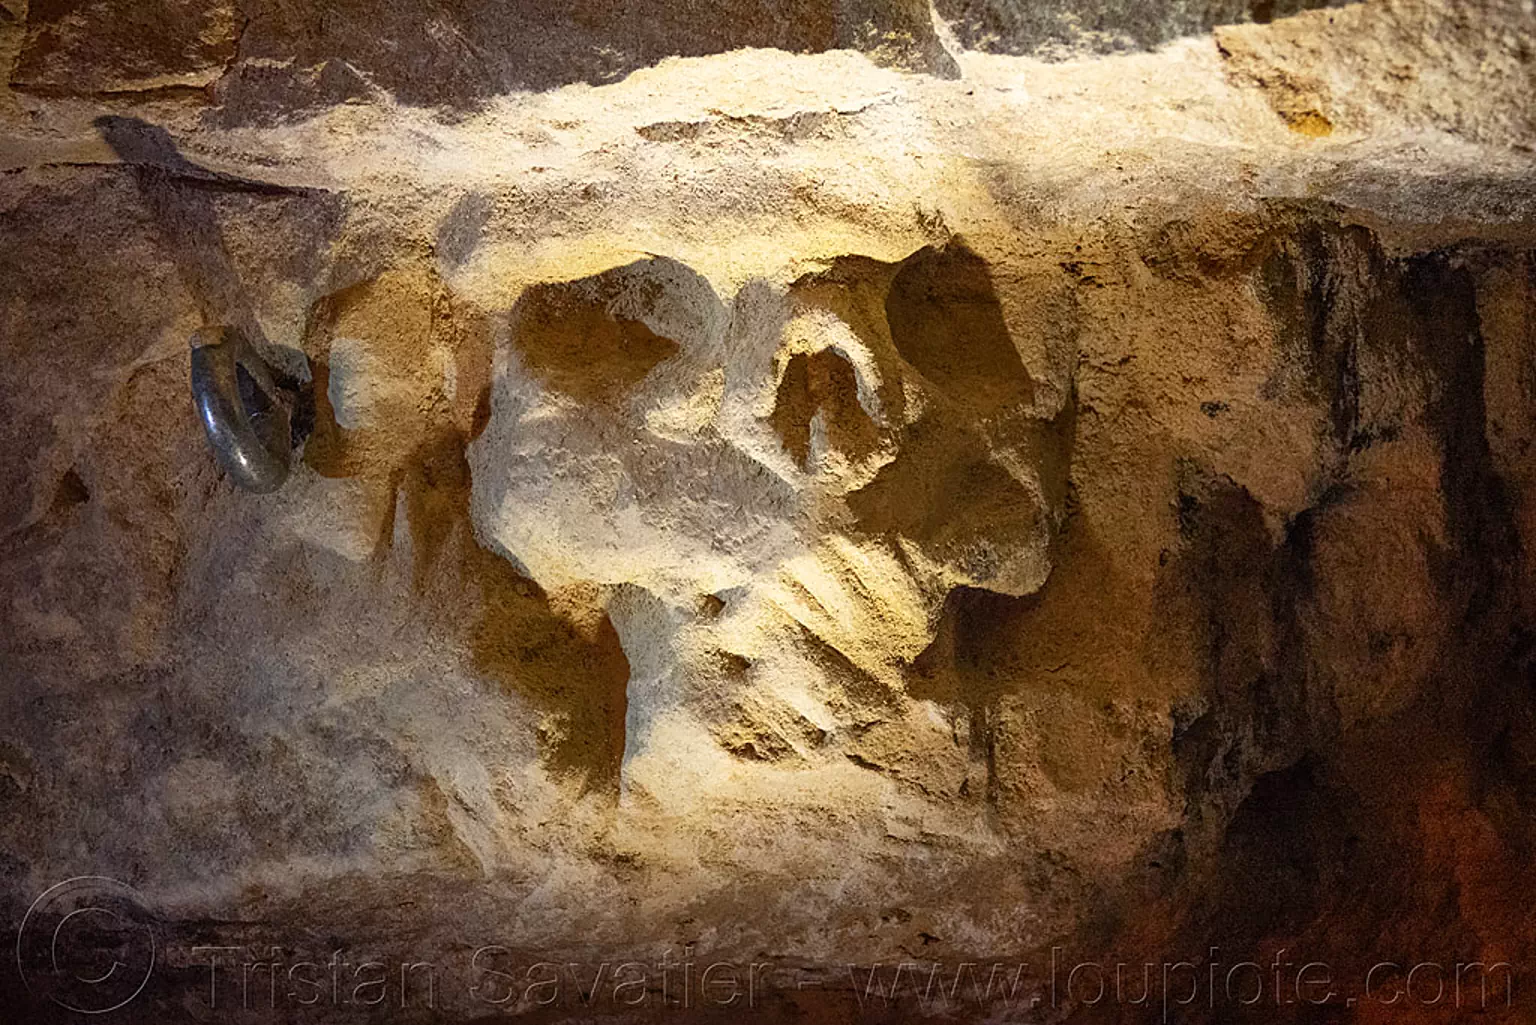 skull sculpture - catacombes de paris - catacombs of paris (off-limit area), cave, clandestines, illegal, paris, trespassing, underground quarry